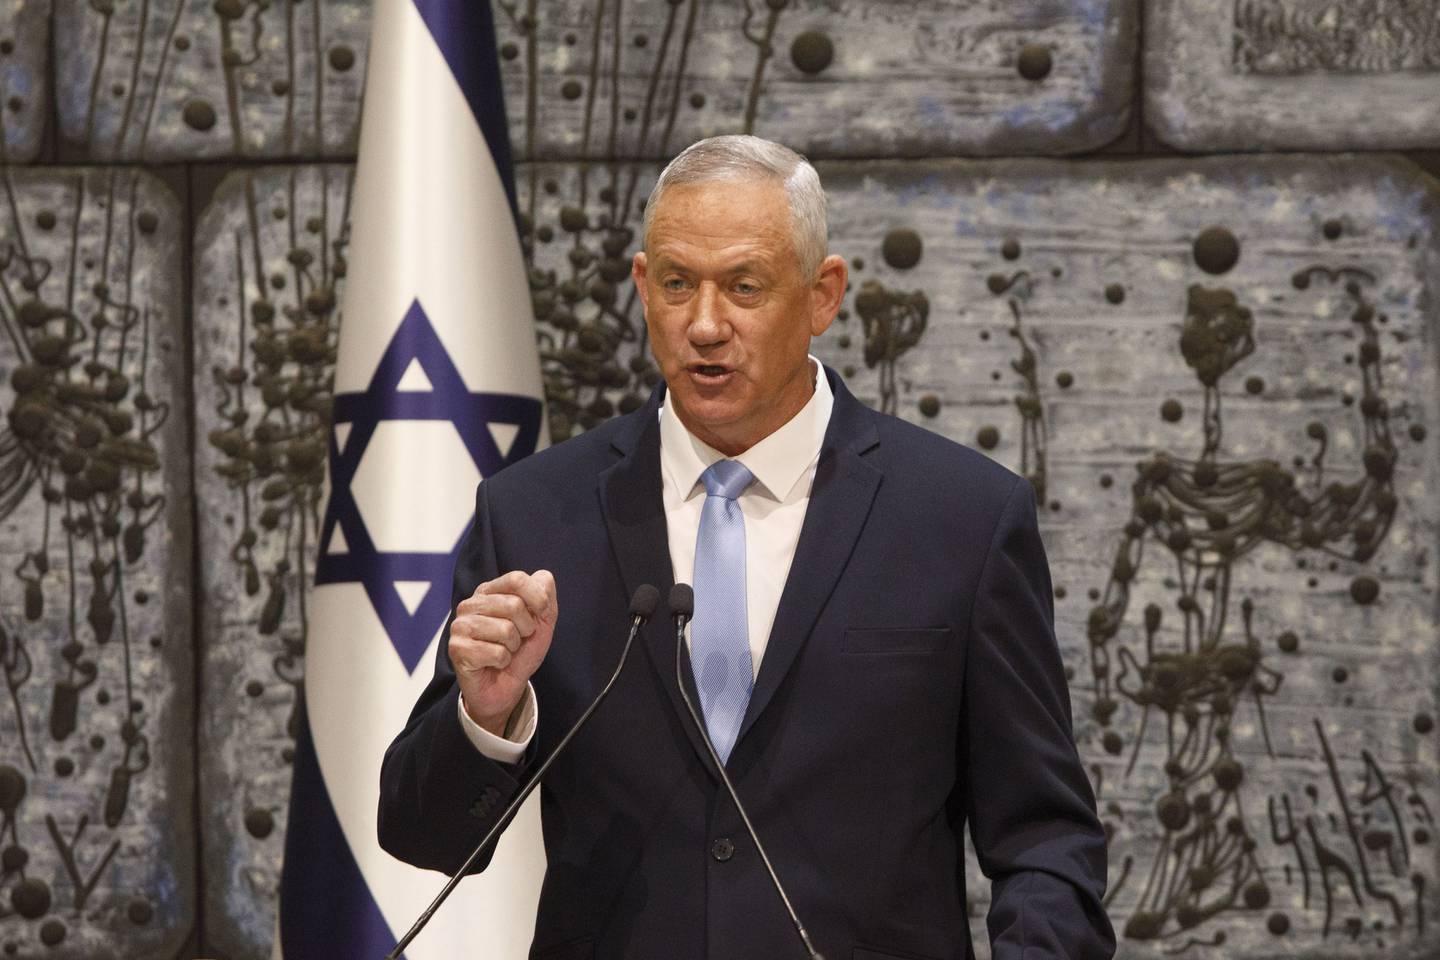 El ministro de Defensa israelí, Benny Gantz, dijo esta semana que Israel está preparado para atacar a Irán si es necesario, mientras su país presionaba para responder al ataque con drones.